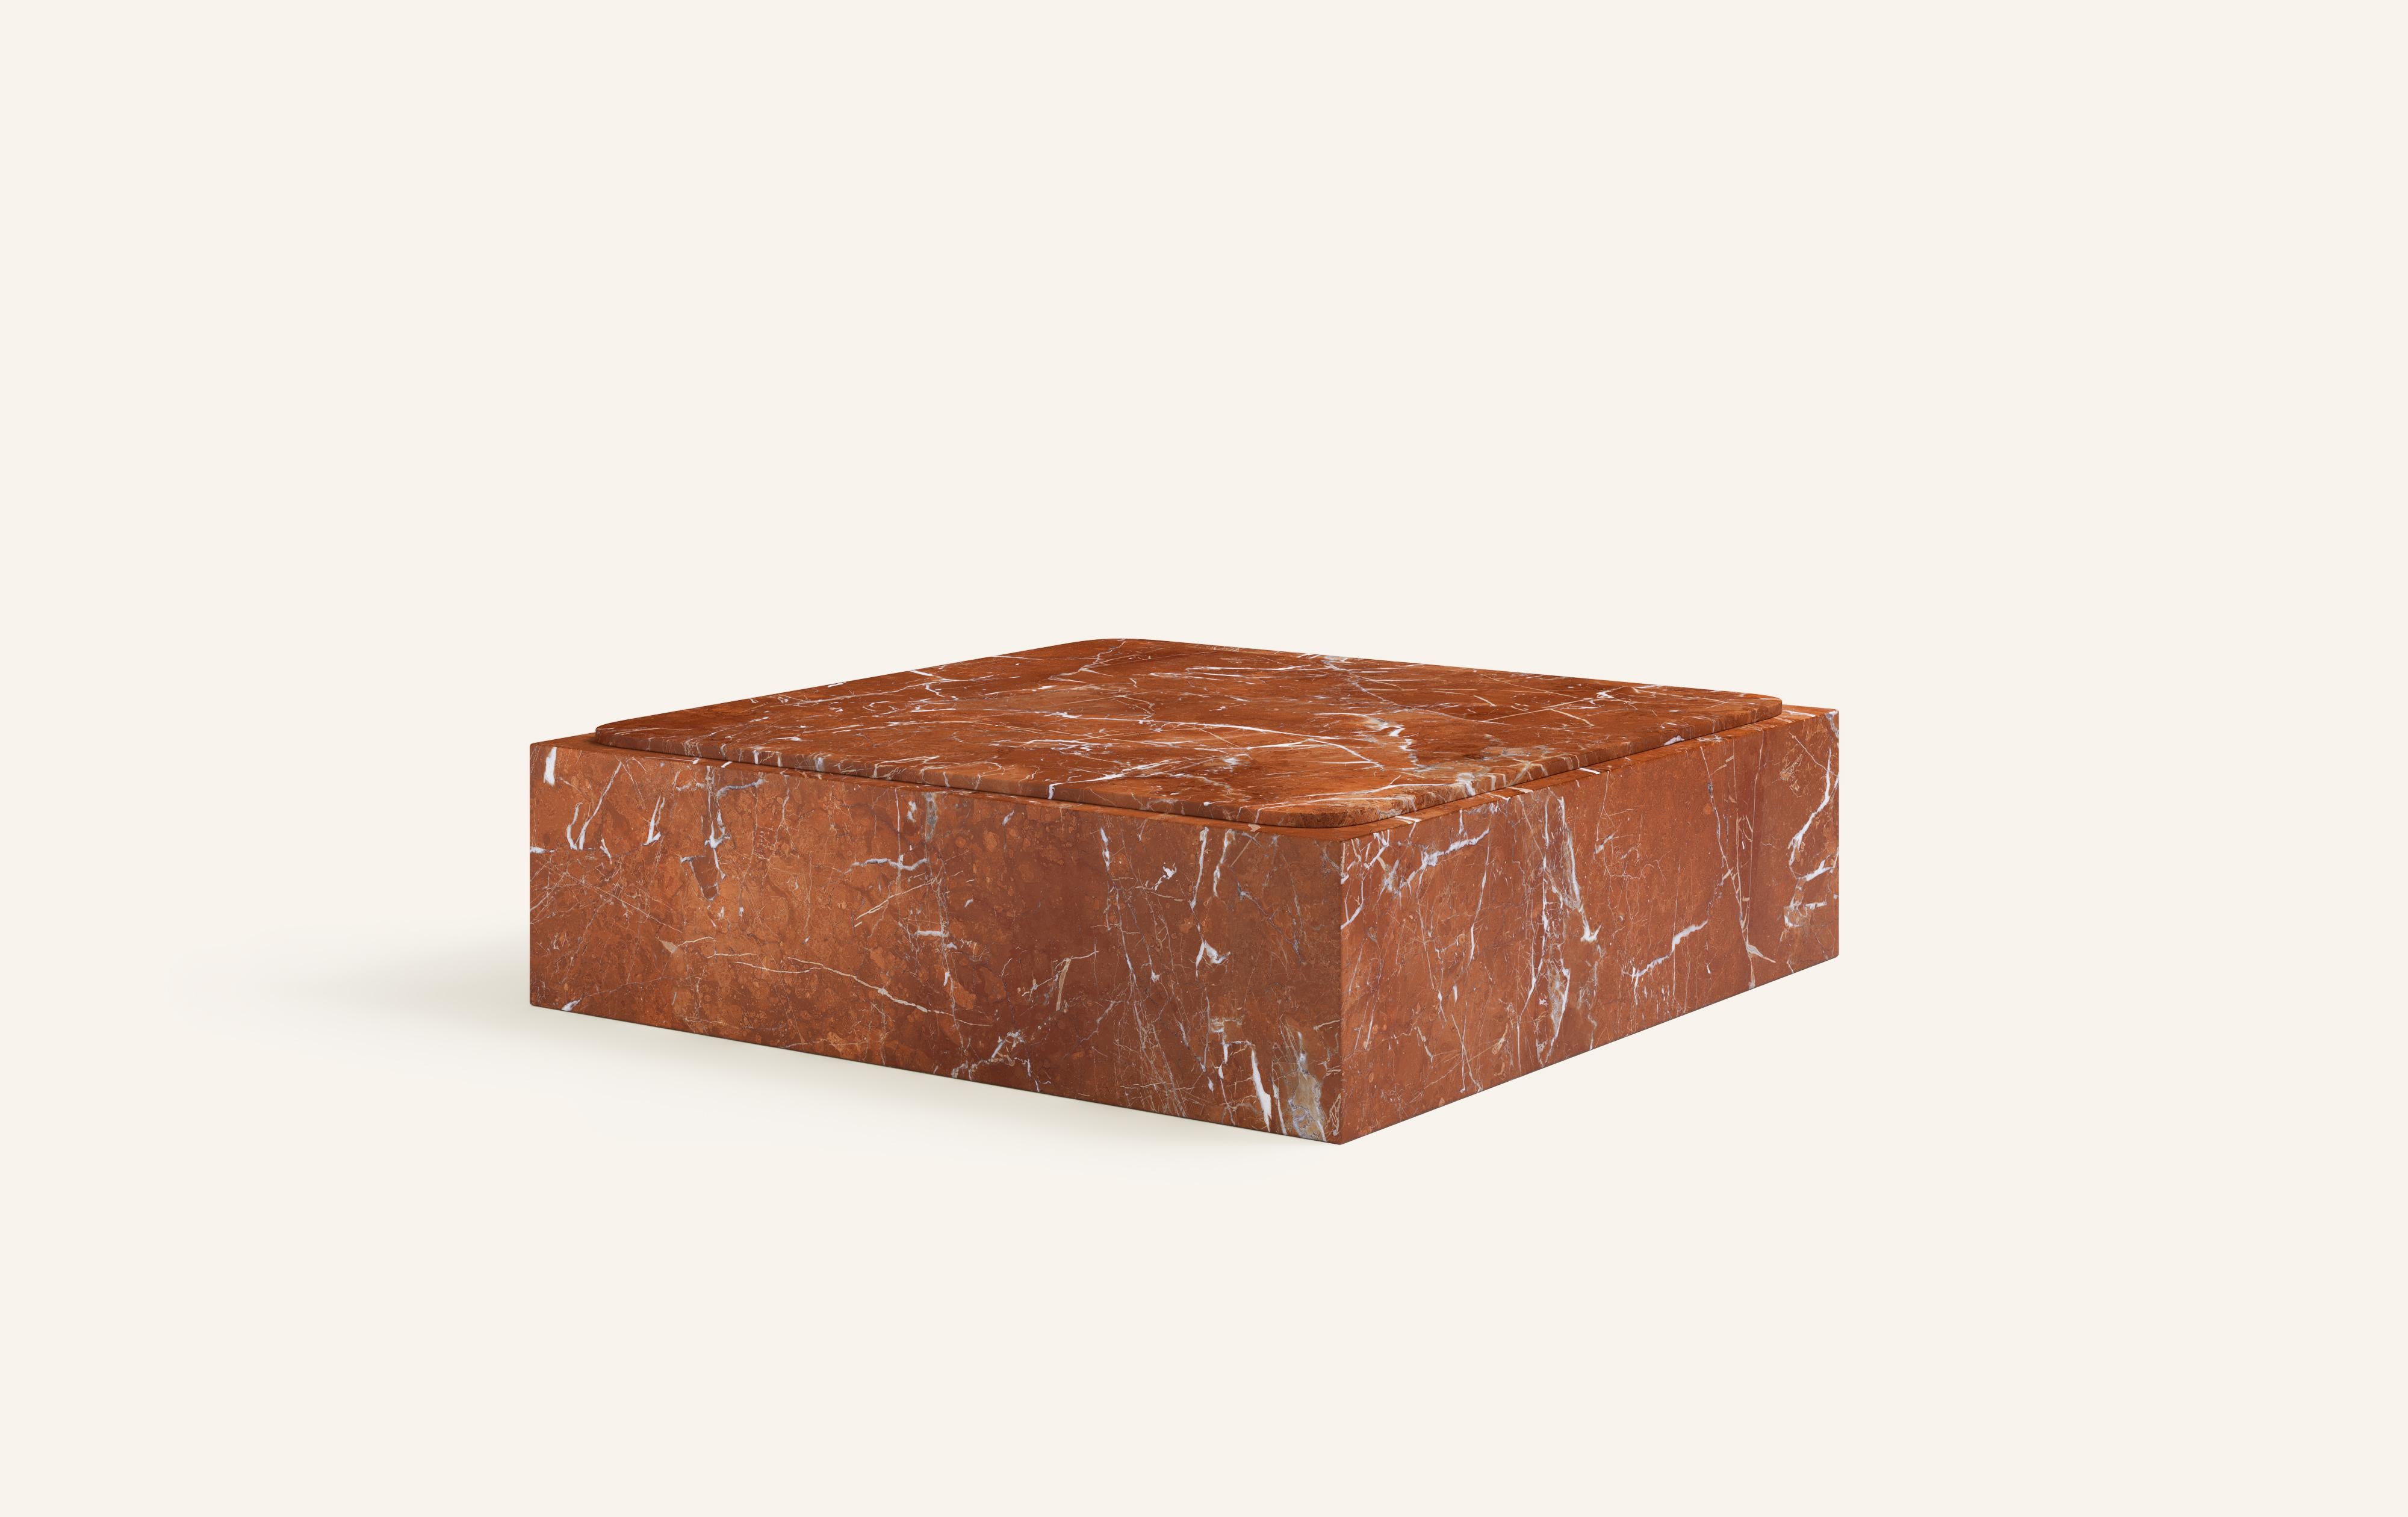 Organic Modern FORM(LA) Cubo Square Plinth Coffee Table 60”L x 60”W x 13”H Rojo Alicante Marble For Sale